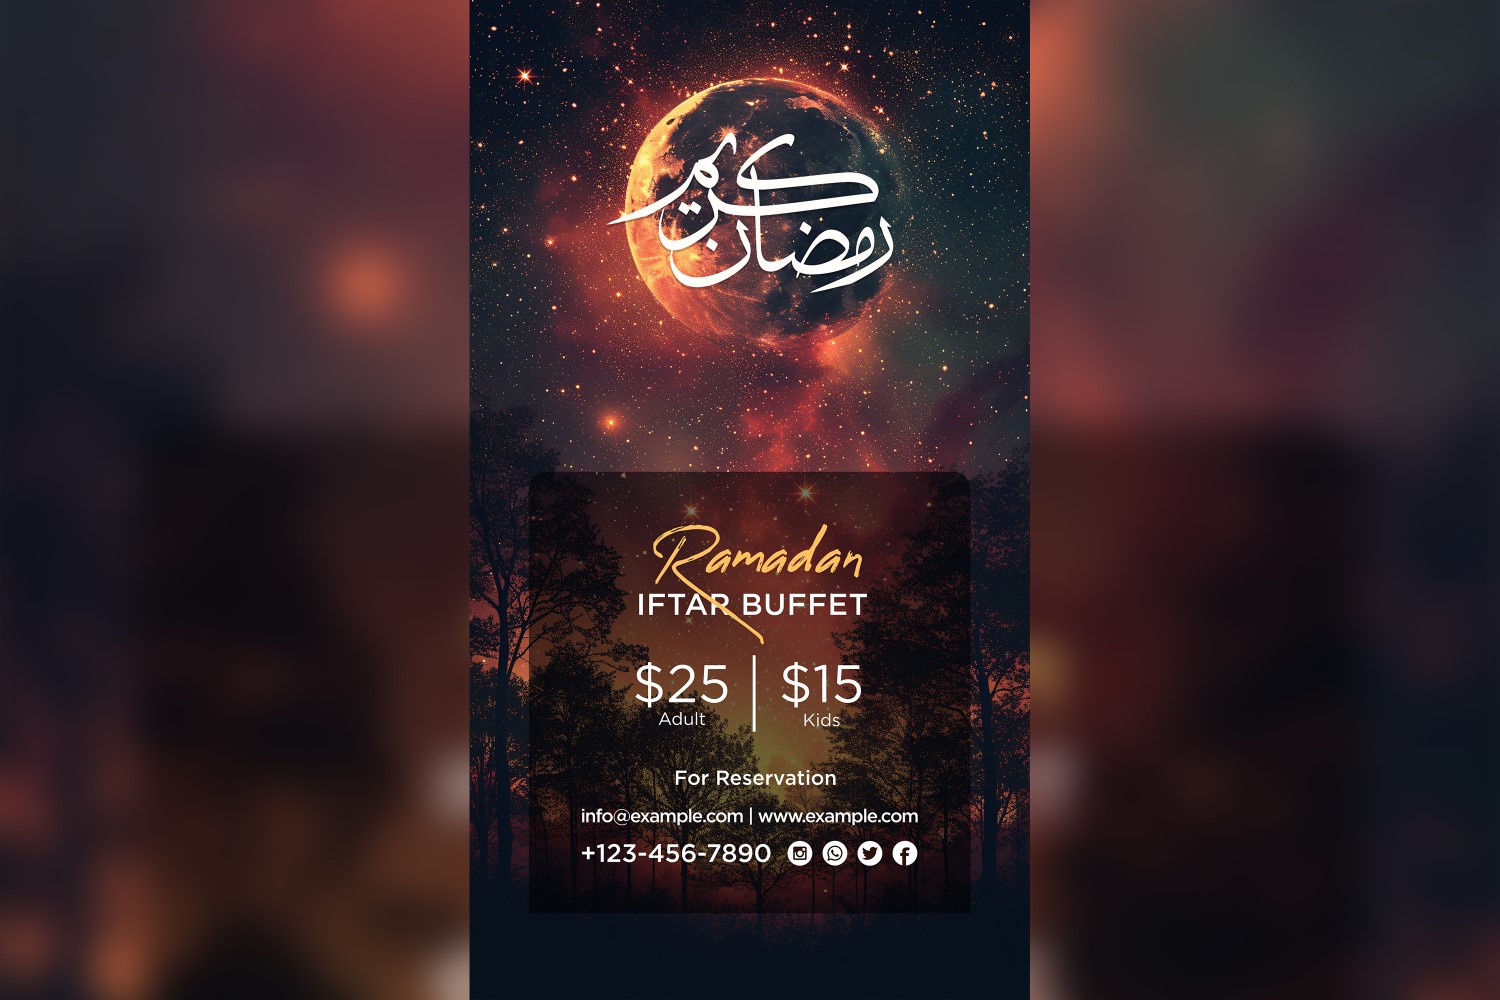 Ramadan Iftar Buffet Poster Design Template 65